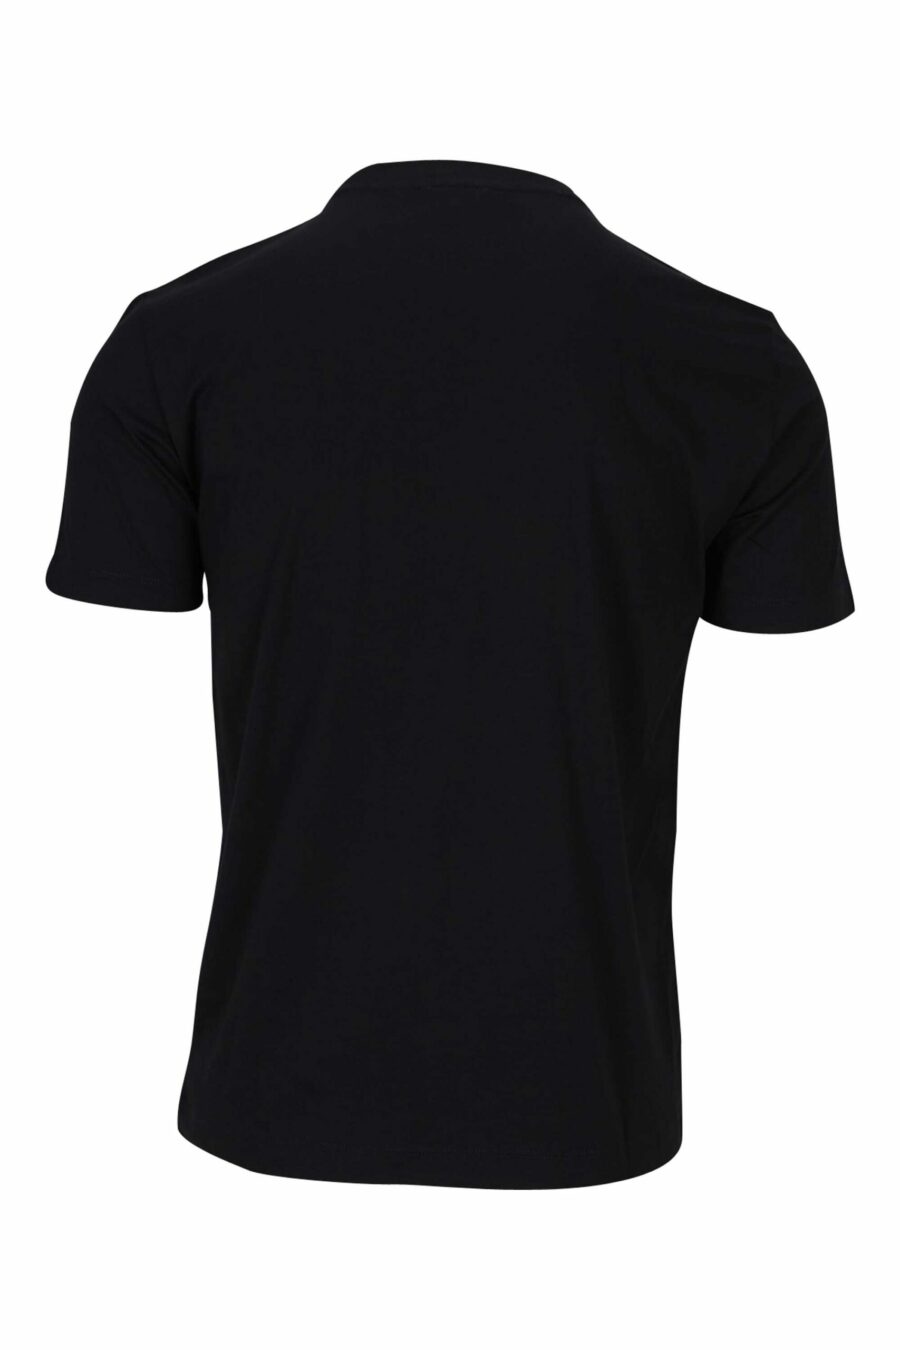 Schwarzes T-Shirt mit "lux identity" Maxilogo in grau - 8056787953321 1 skaliert